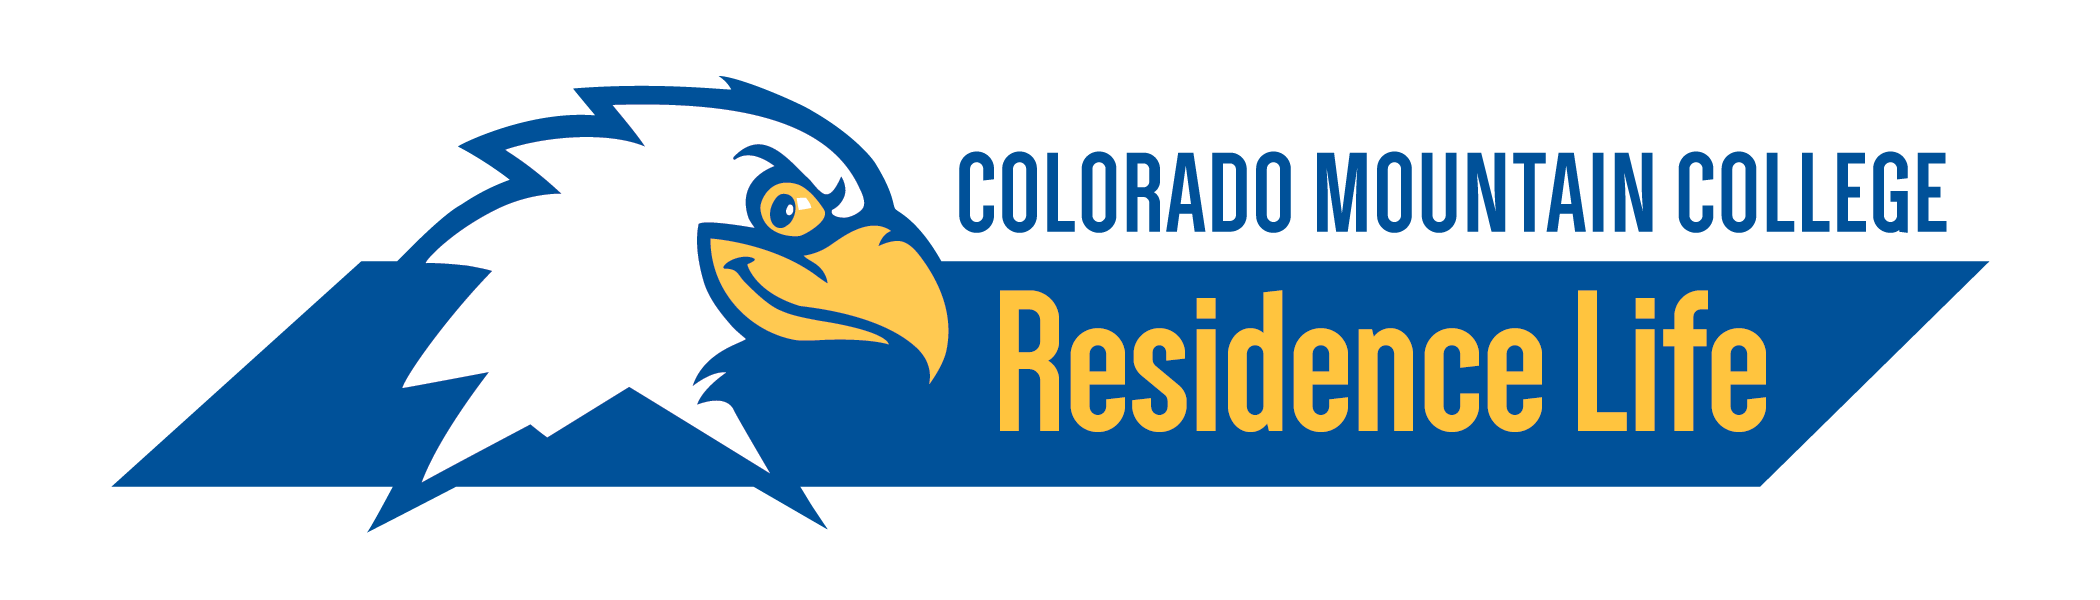 Colorado Mountain College Residence Life